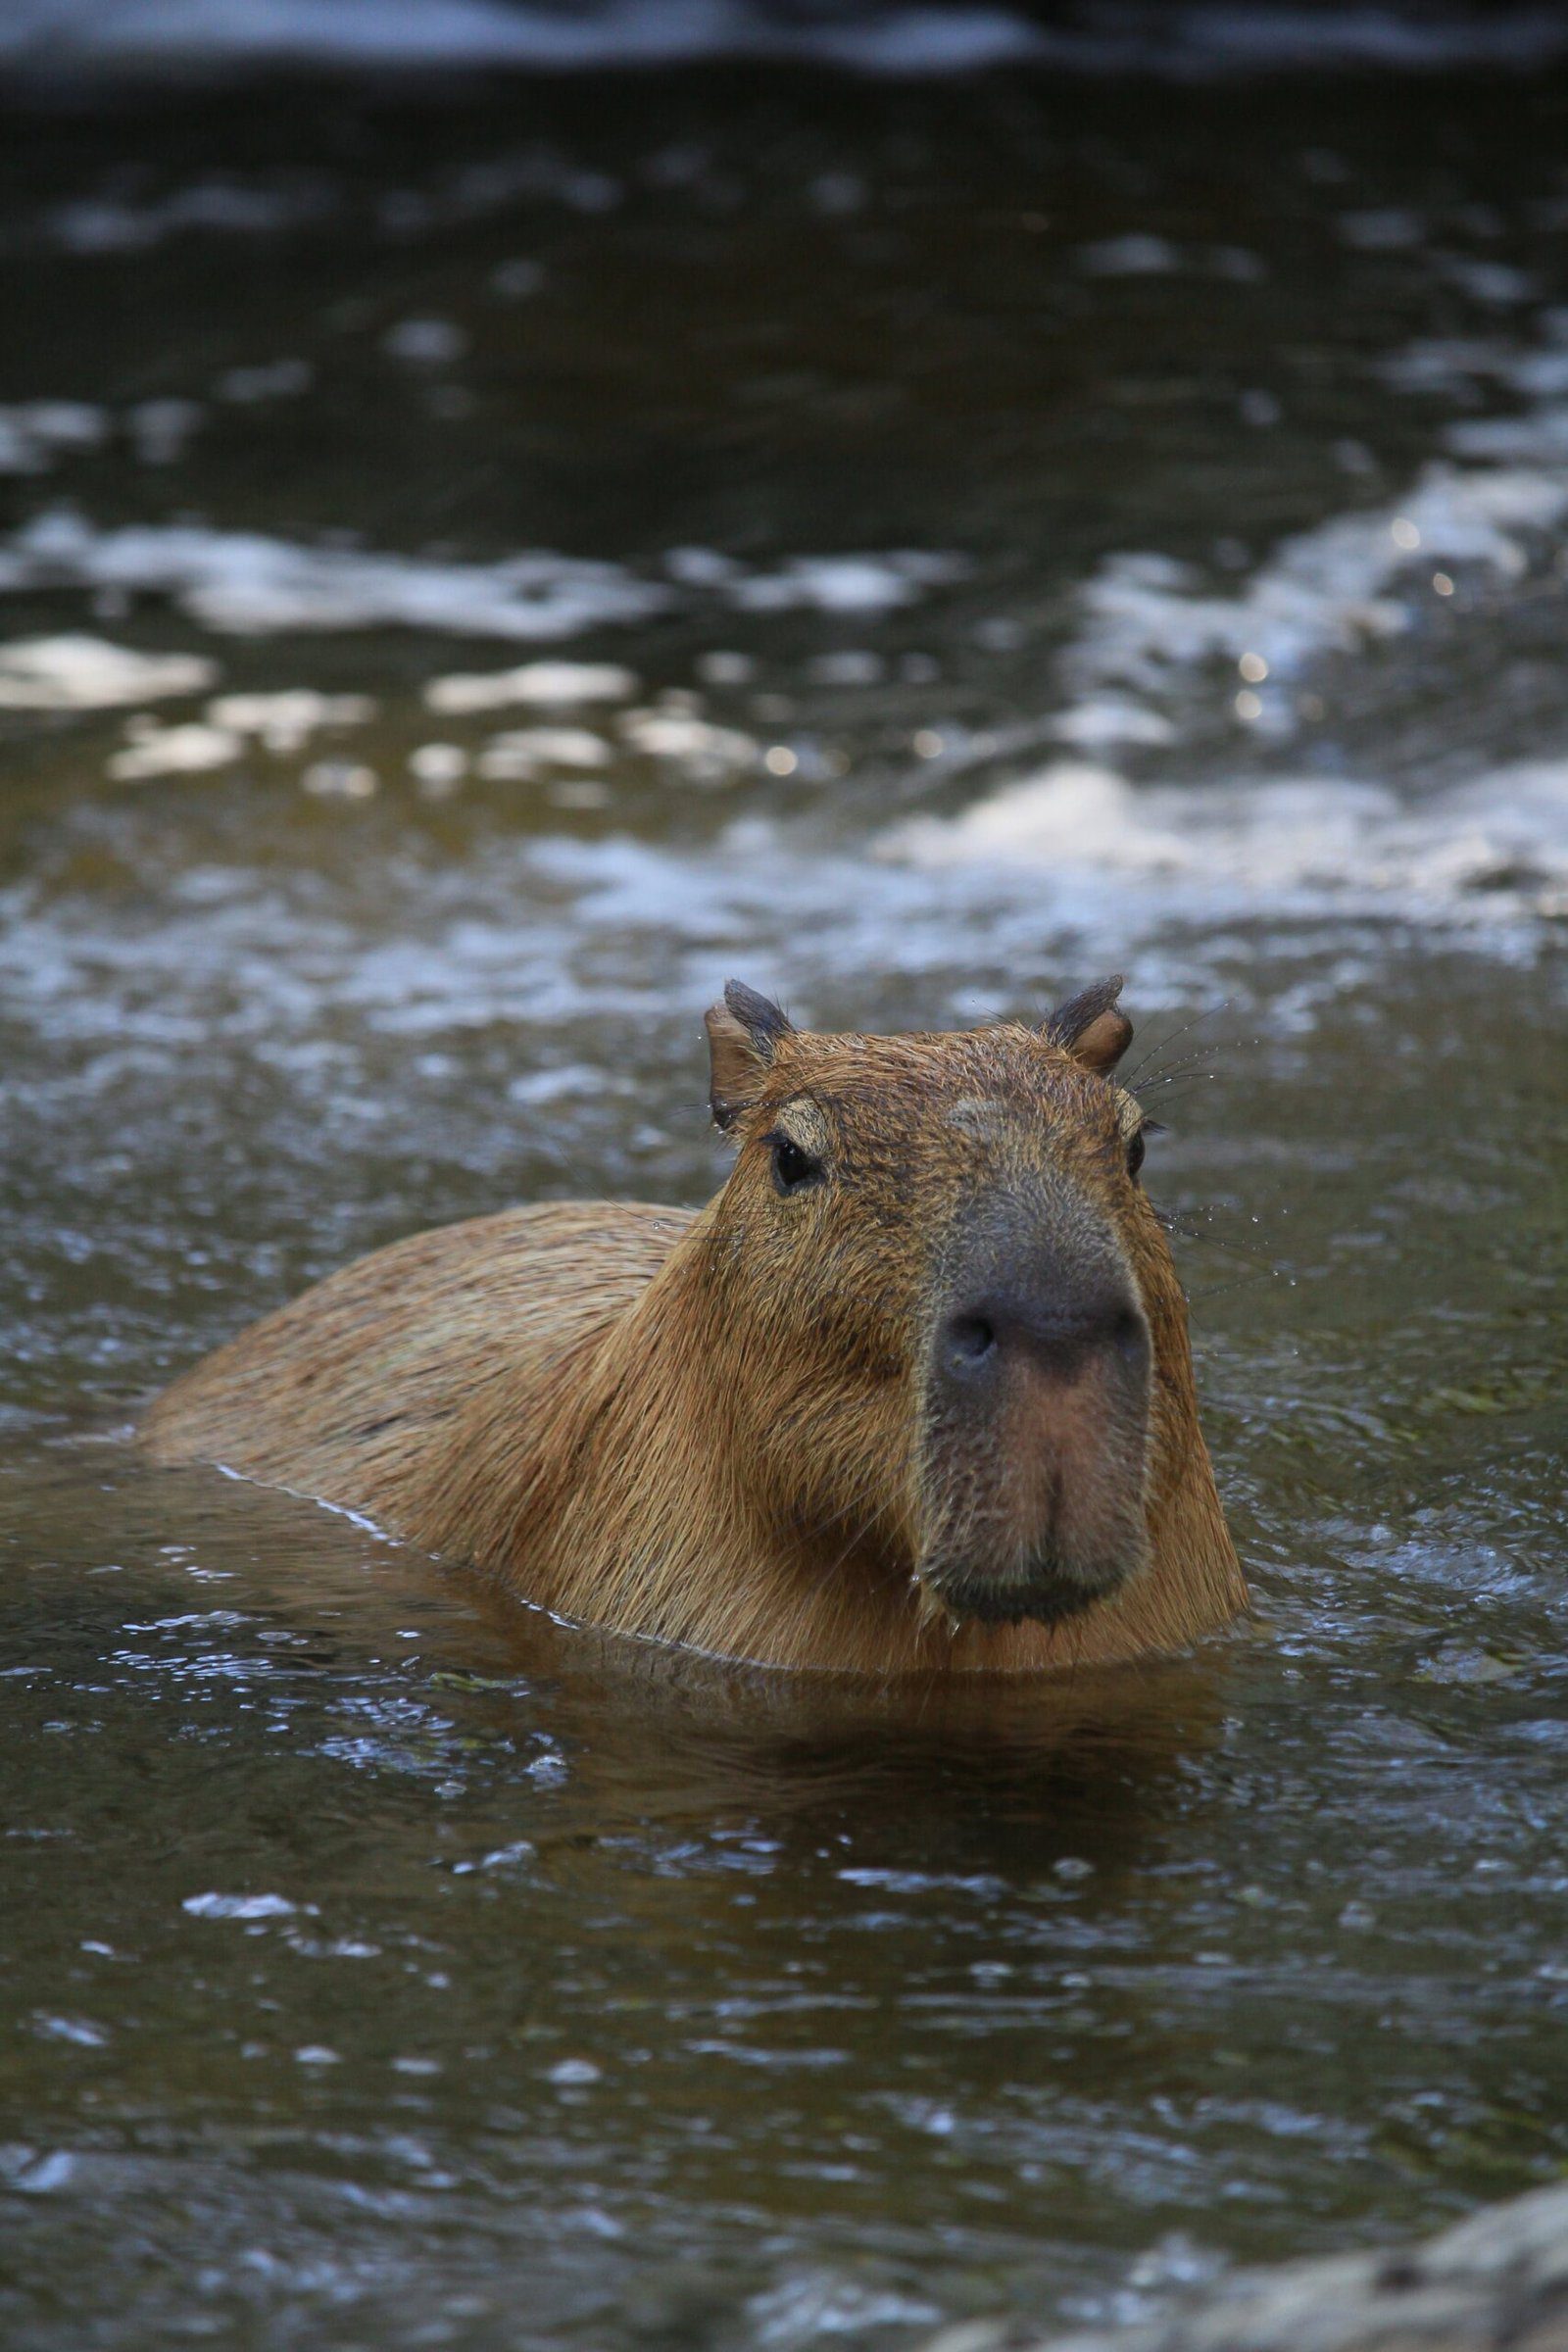 Adorable Picture of a Capybara